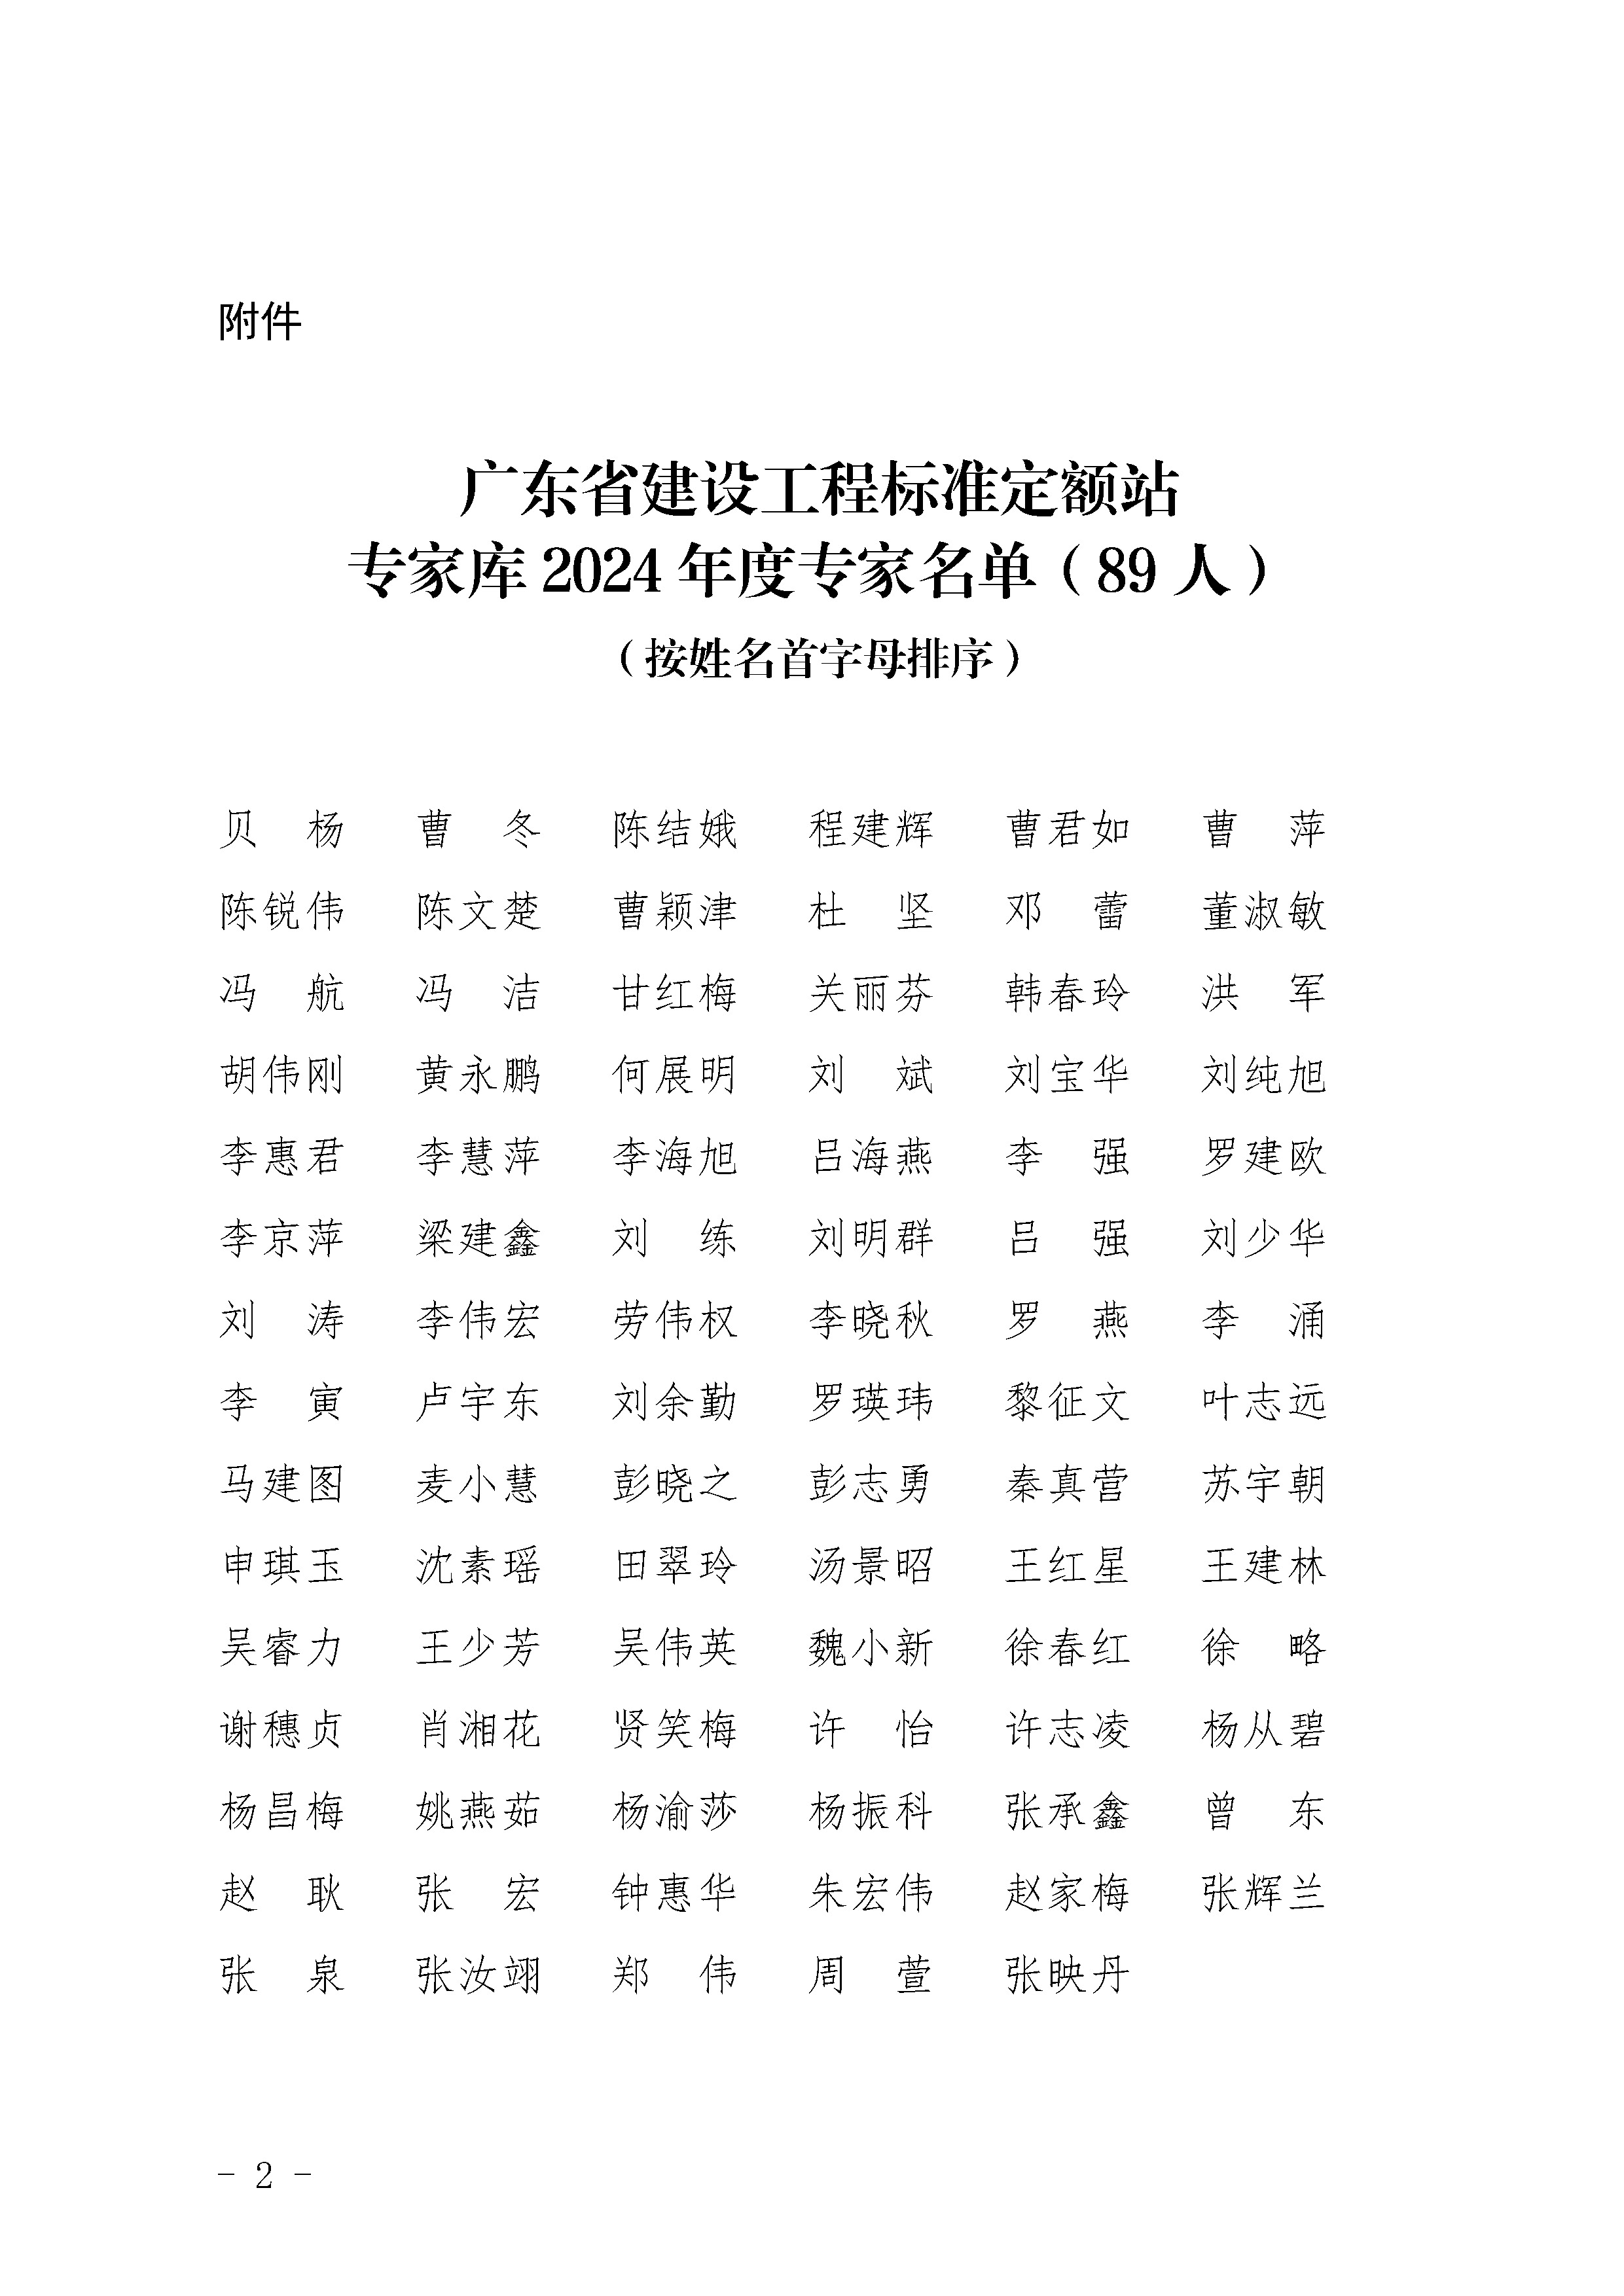 广东省建设工程标准定额站专家库2024年度专家名单_页面_2(1).jpg